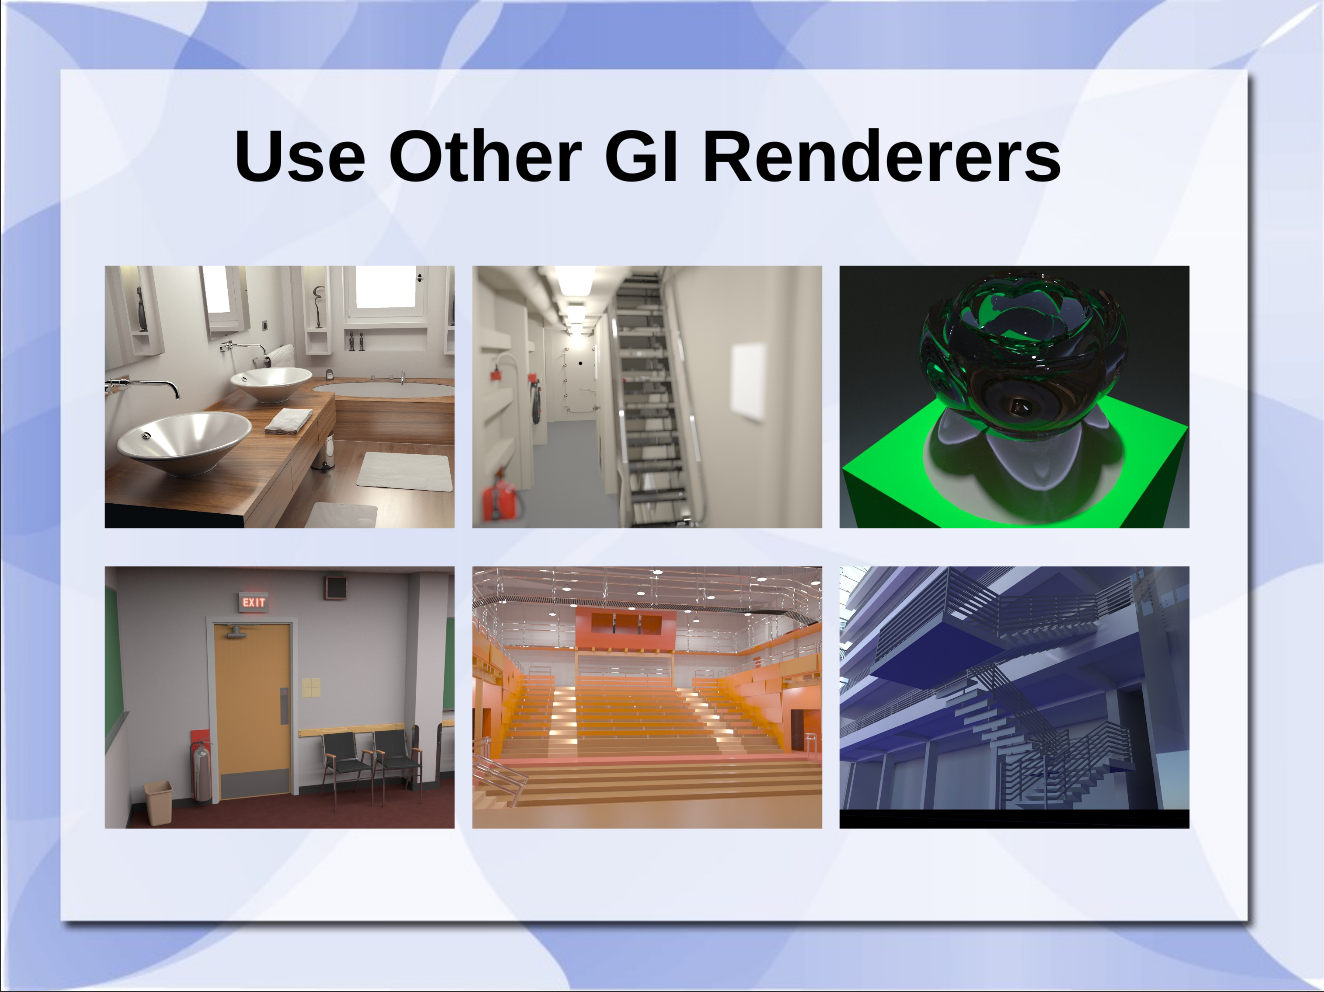 Slide from Blender Conference in 2014